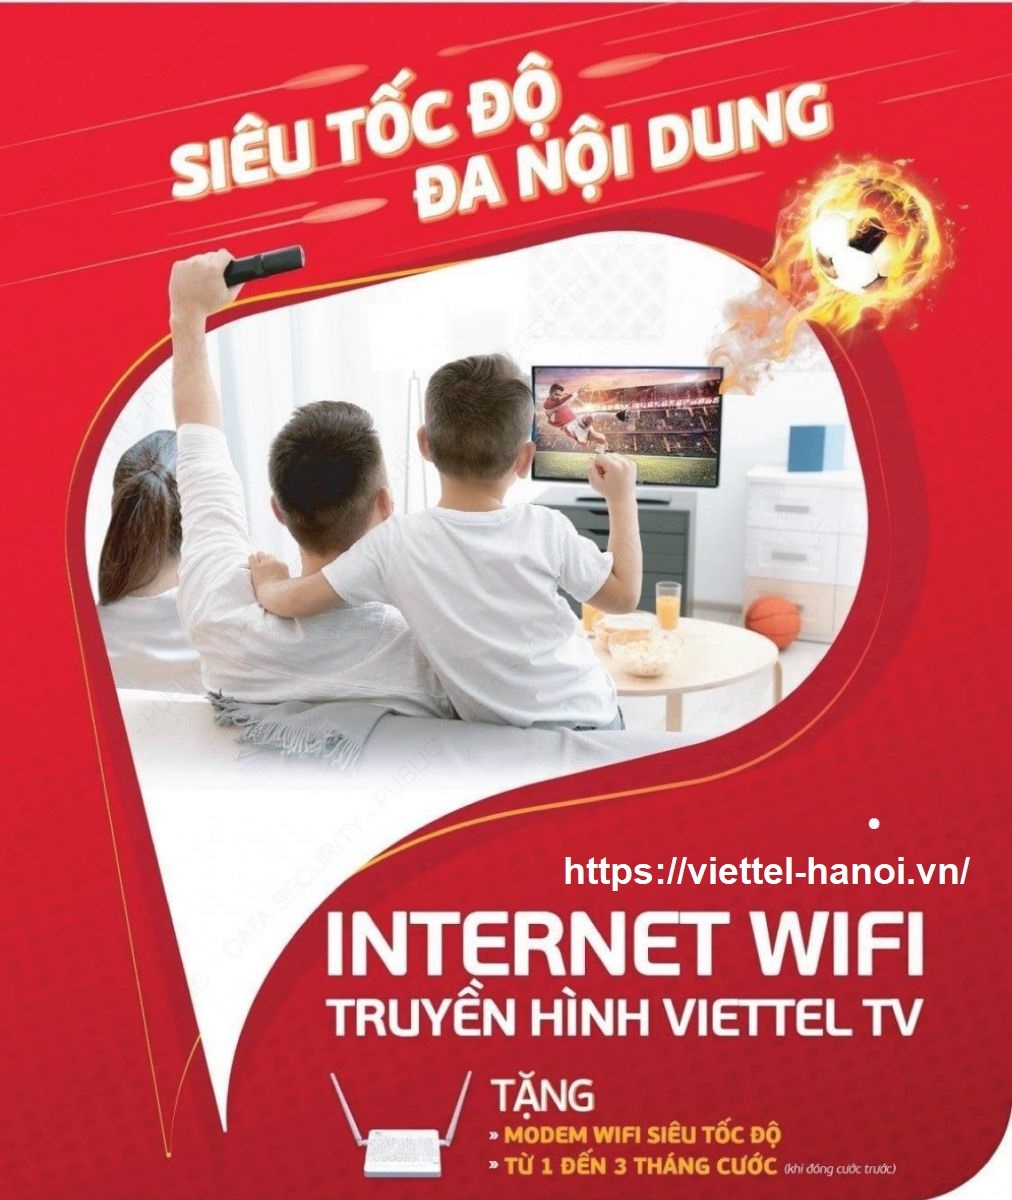 Lắp mạng cáp quang Viettel quận 8 - internet wifi quận 8